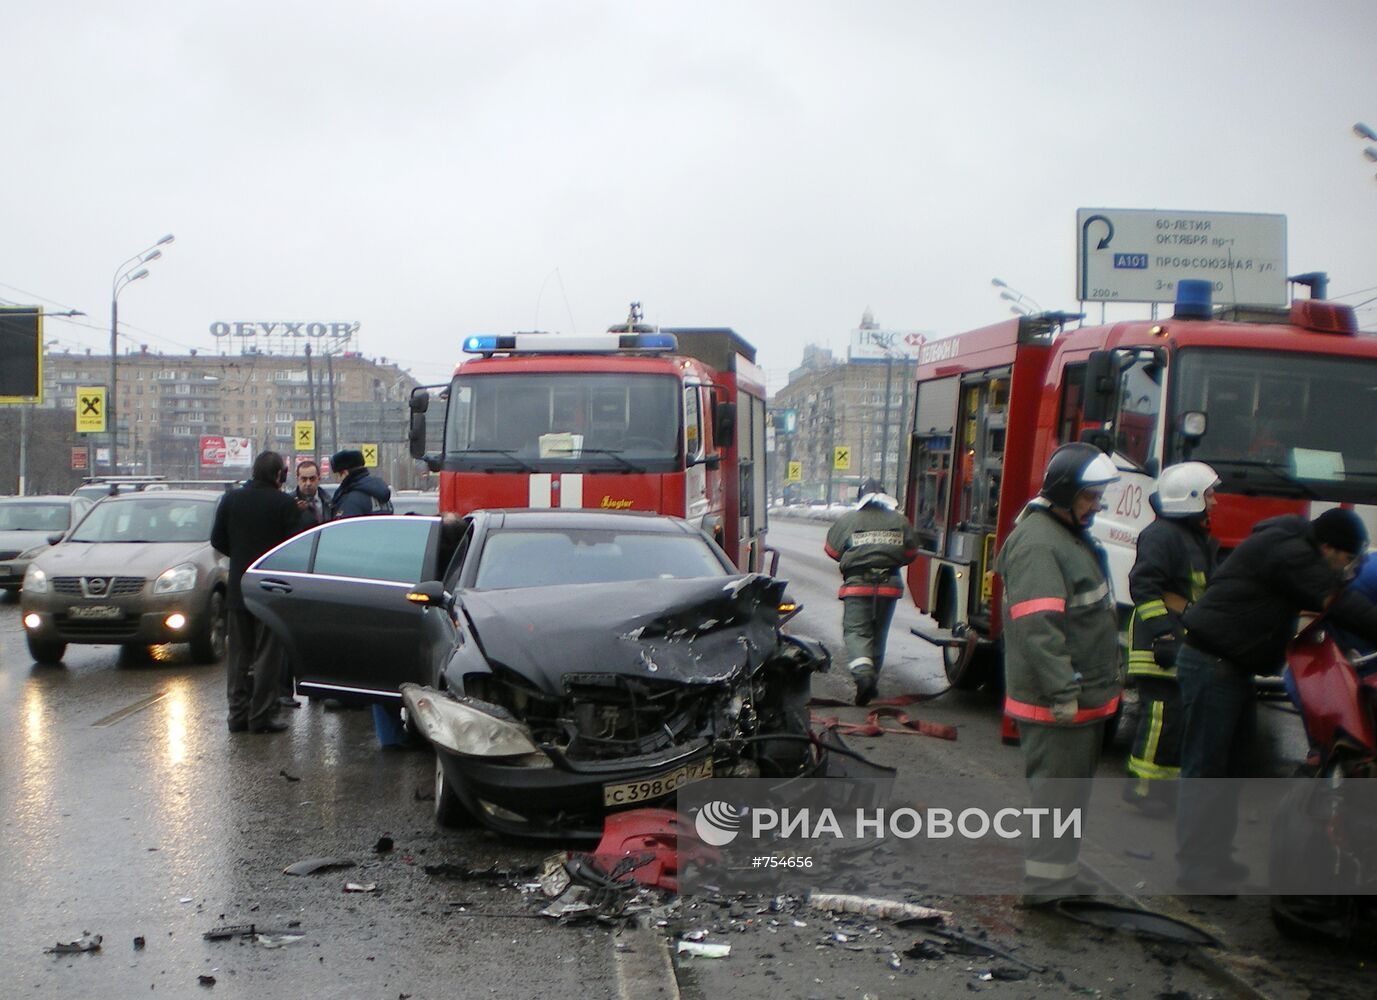 ДТП на Ленинском проспекте с участием машины Анатолия Баркова